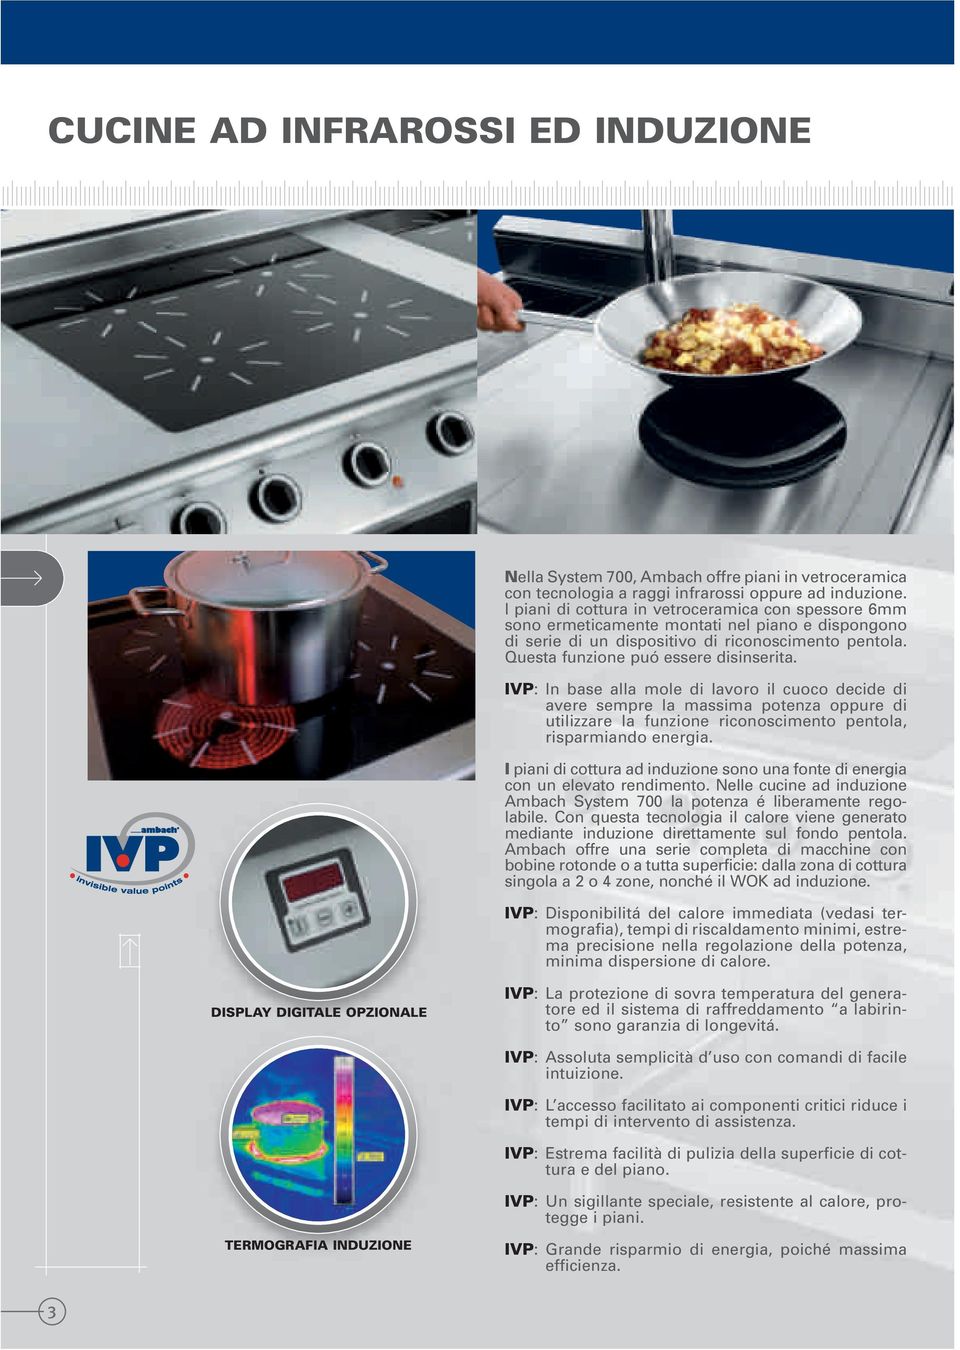 IVP: In base alla mole di lavoro il cuoco decide di avere sempre la massima potenza oppure di utilizzare la funzione riconoscimento pentola, risparmiando energia.